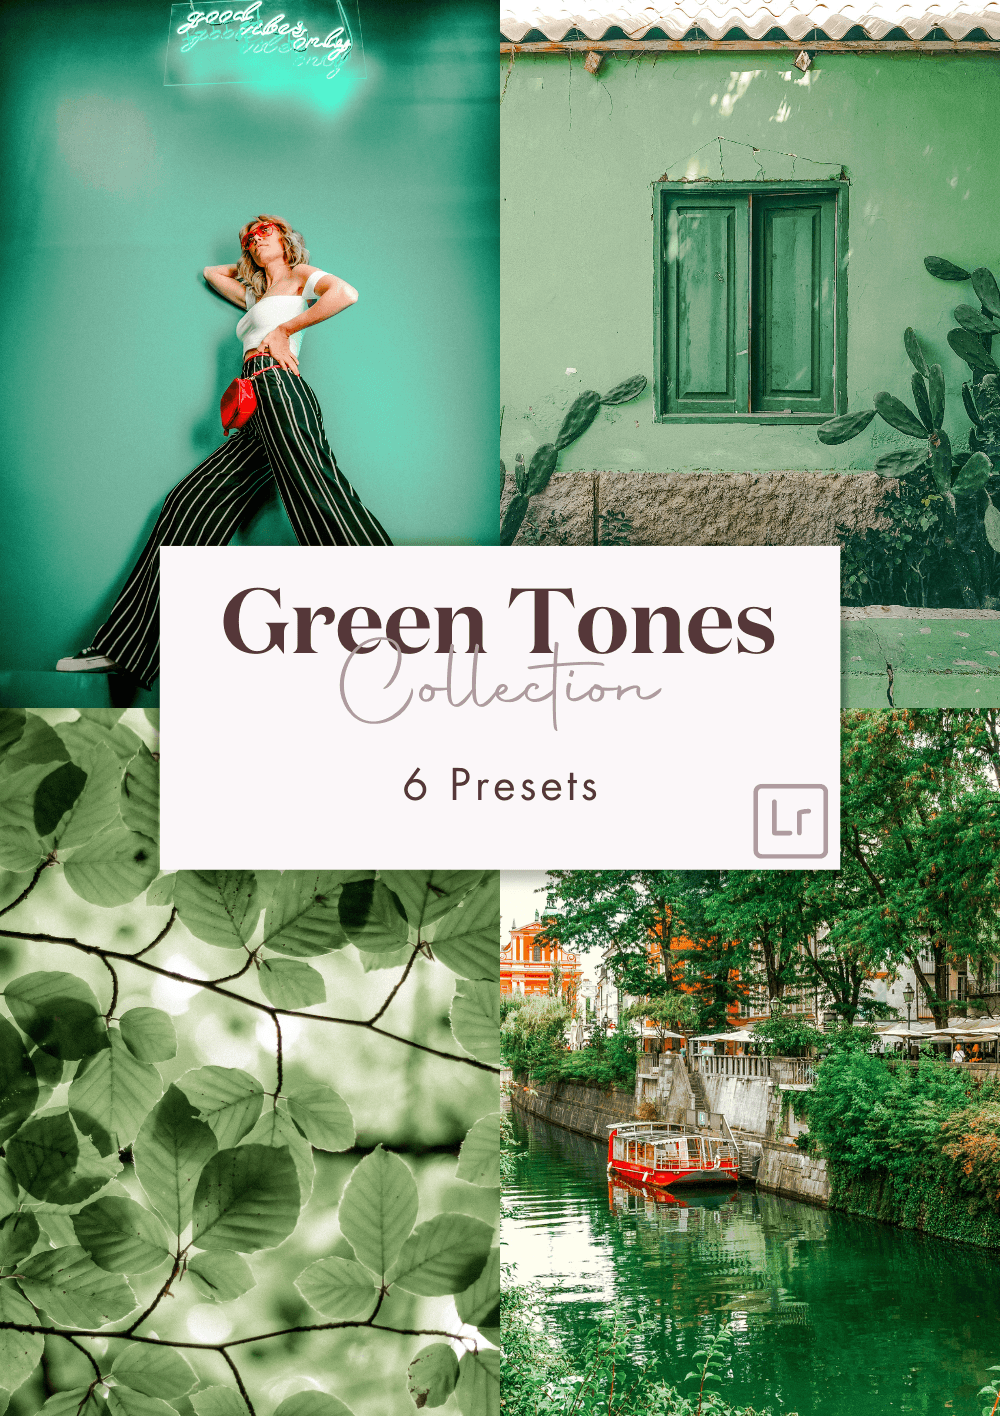 Green Tones Collection: Un monde de presets vibrant de verts - Creative Kits